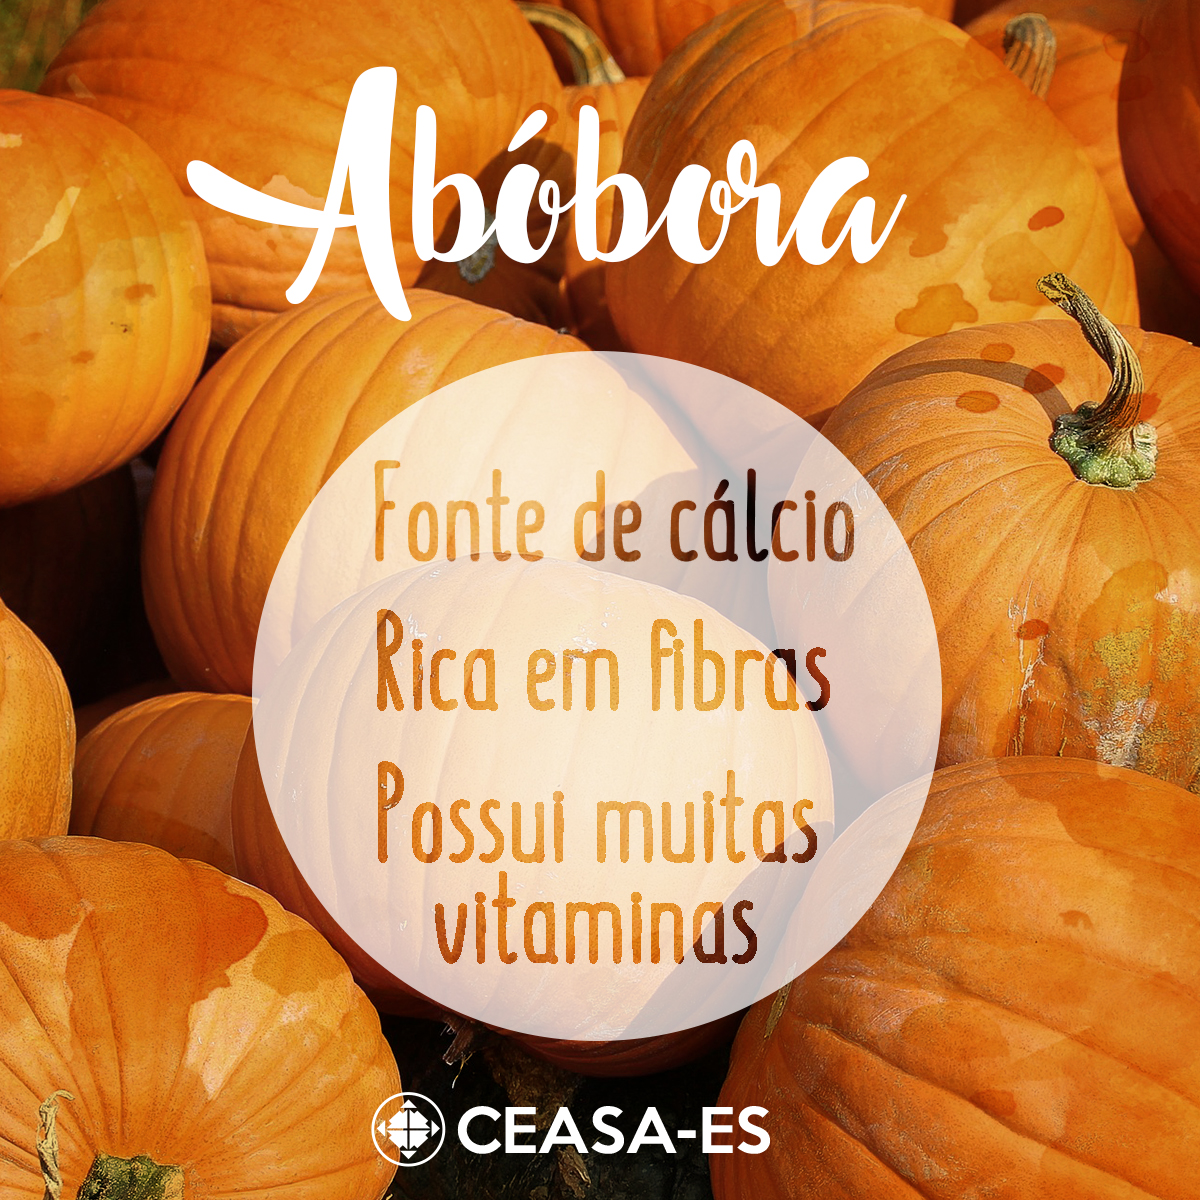 Abóbora-Ceasa - cálcio2c fibras e vitaminas